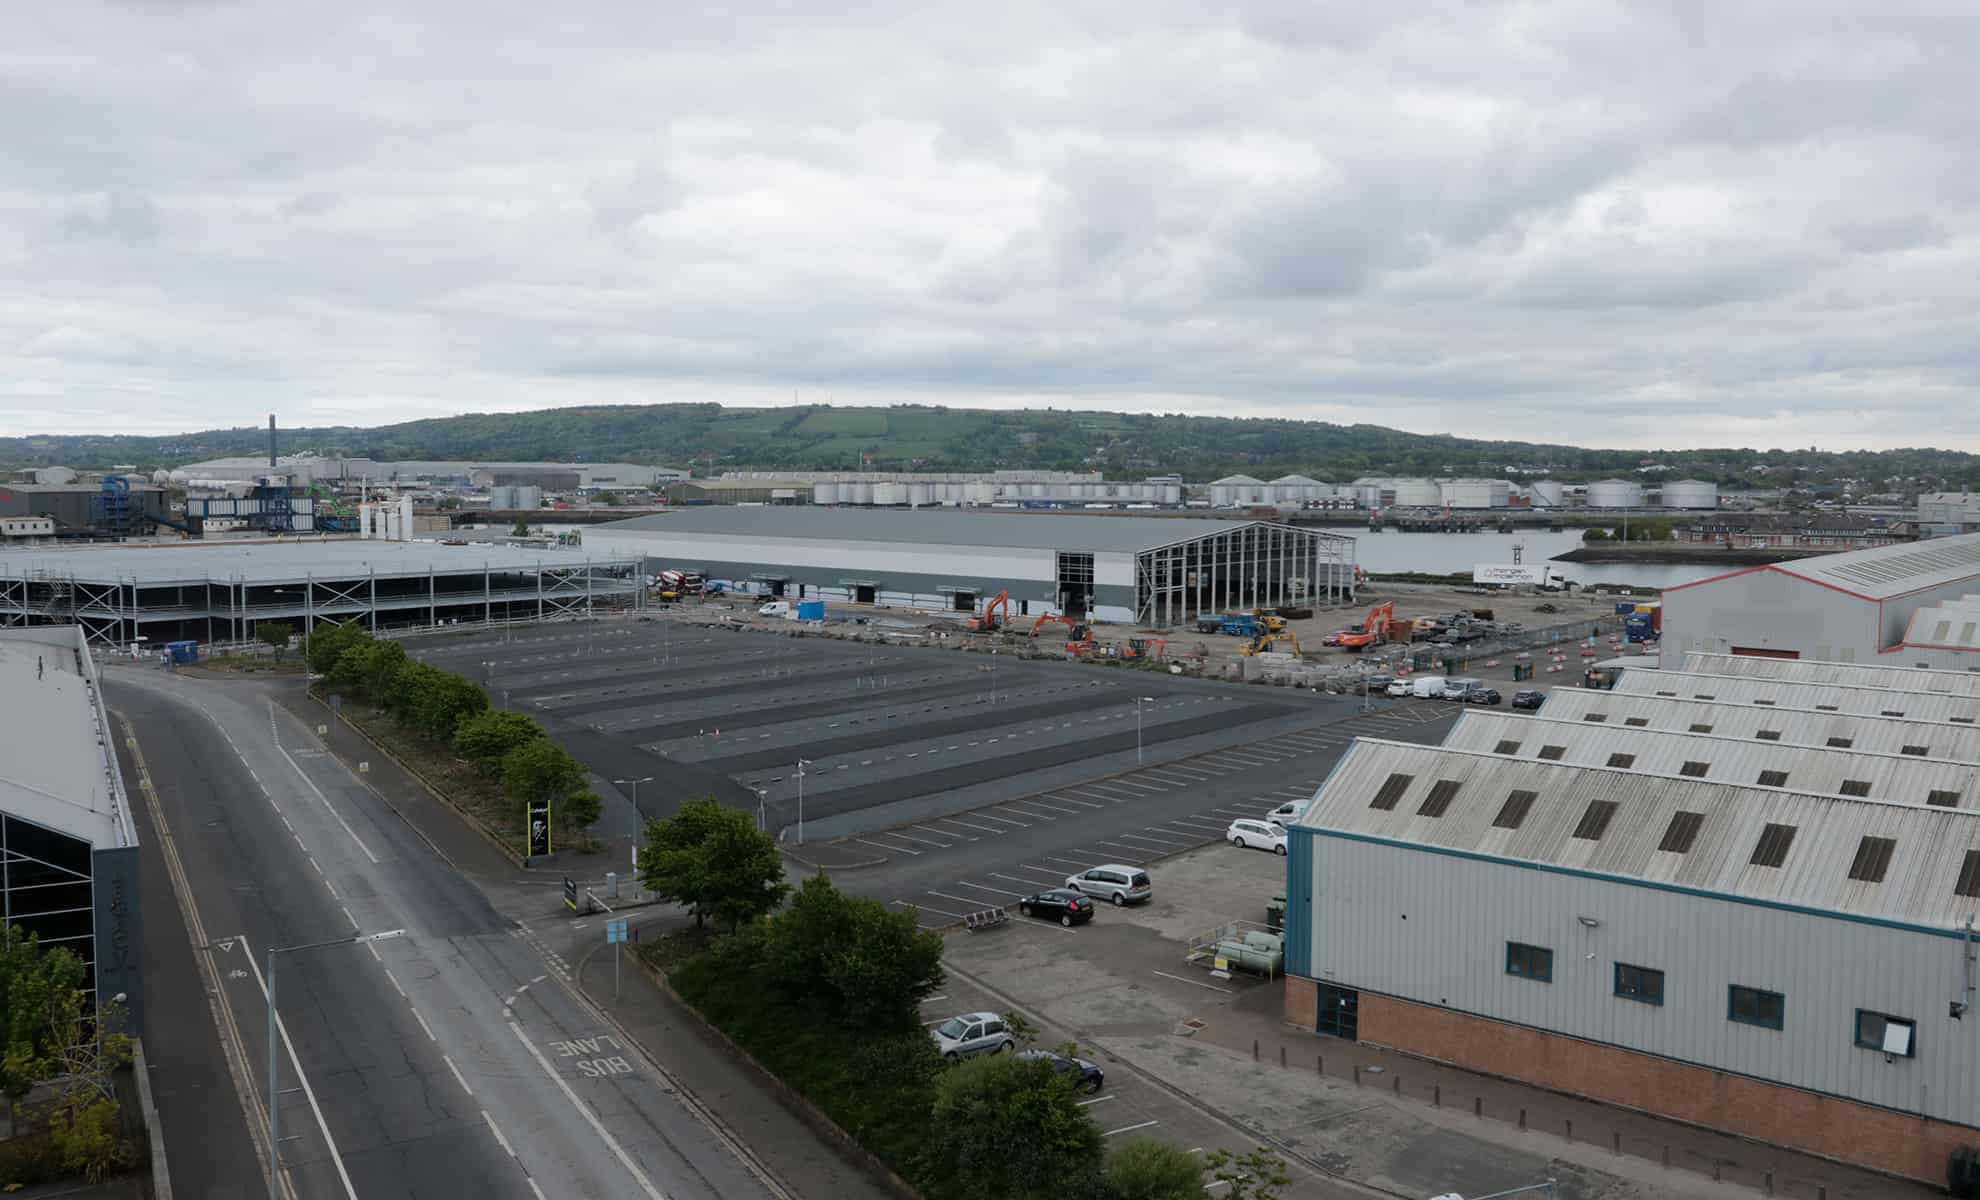 Amazon Distribution Centre Construction Site